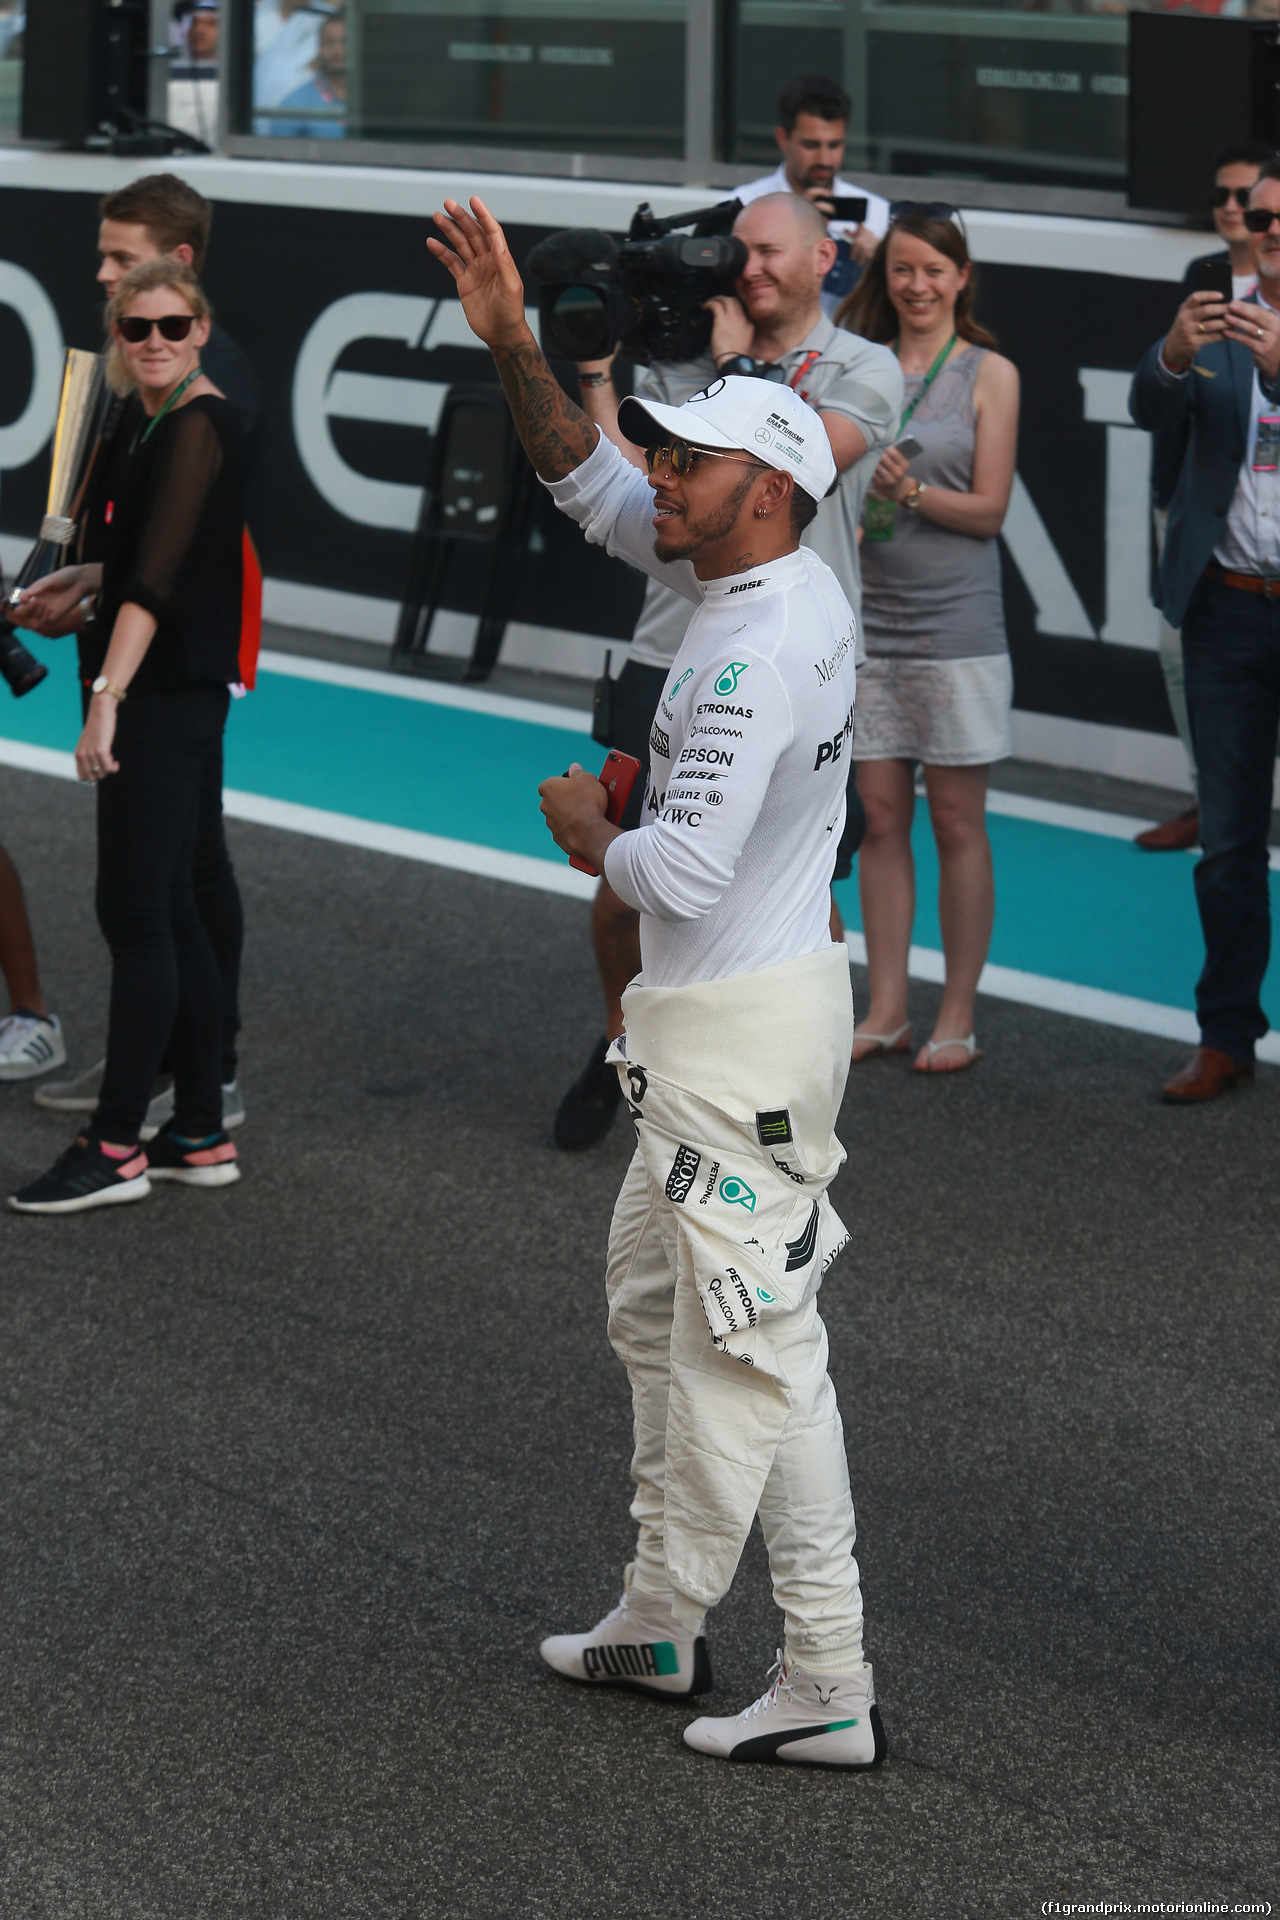 GP ABU DHABI, 26.11.2017 - Lewis Hamilton (GBR) Mercedes AMG F1 W08